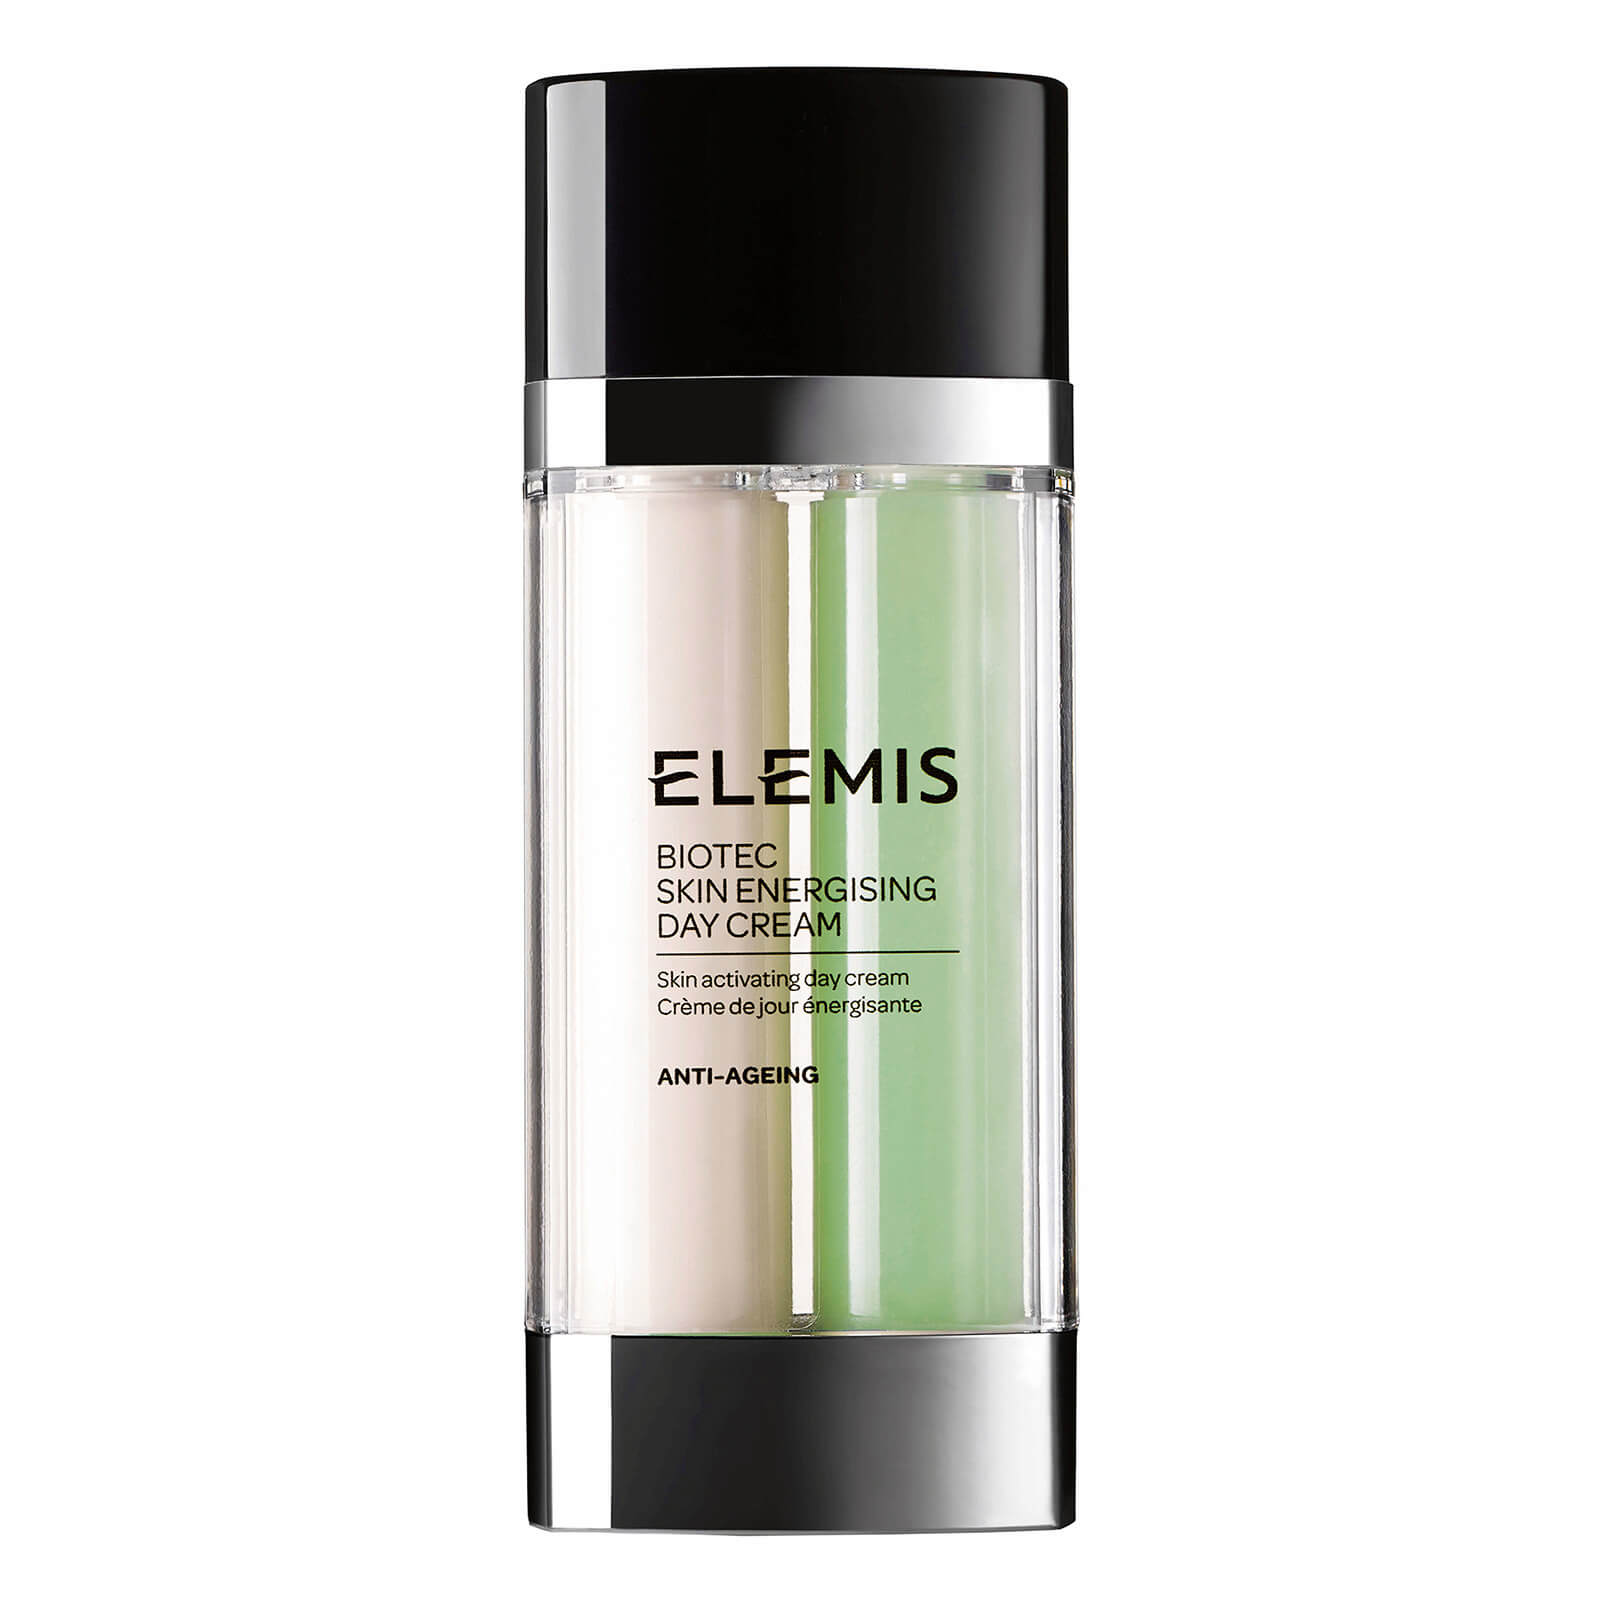 Crema de Día BIOTEC Skin Energising de Elemis 30 ml